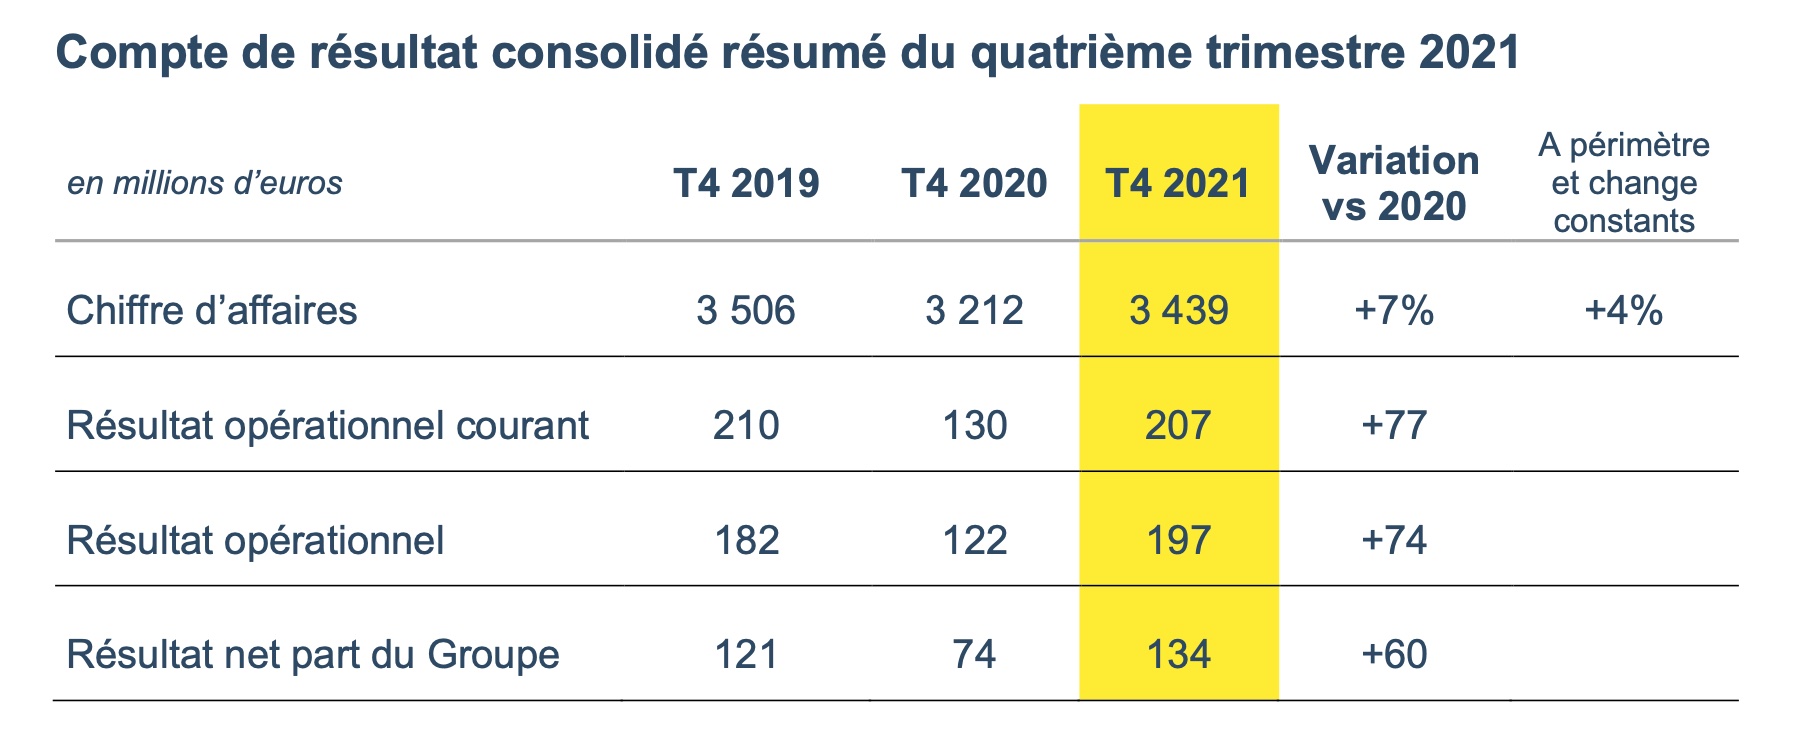 Compte de résultat consolidé résumé de Colas au quatrième trimestre 2021 - Source image : Colas